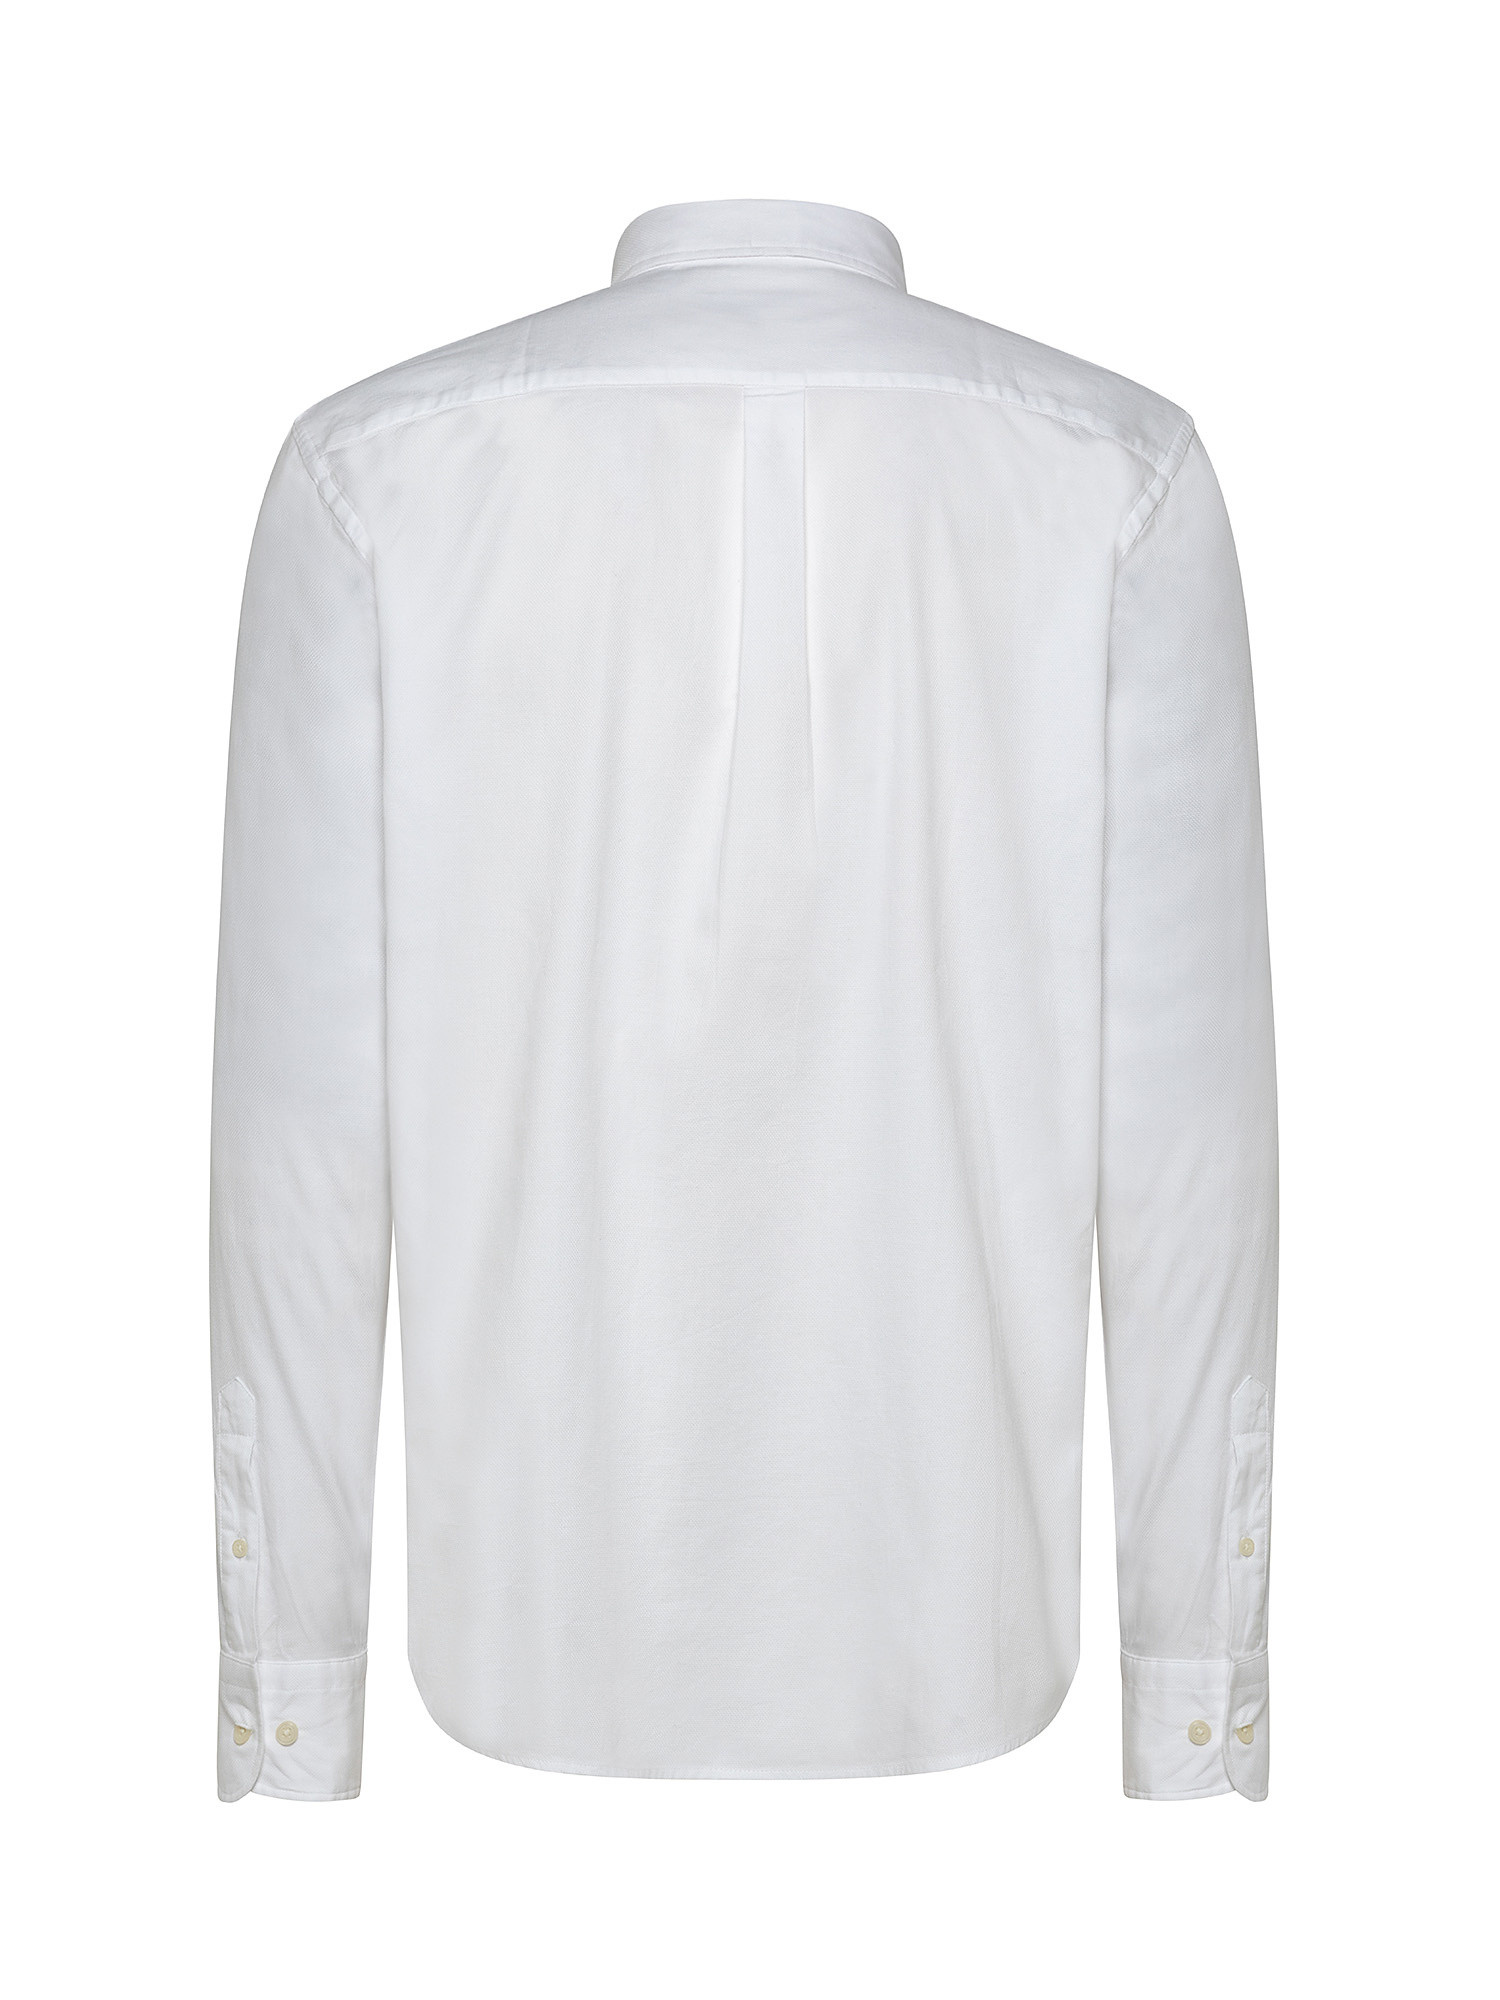 Camicia tailor fit tessuto armaturato, Bianco, large